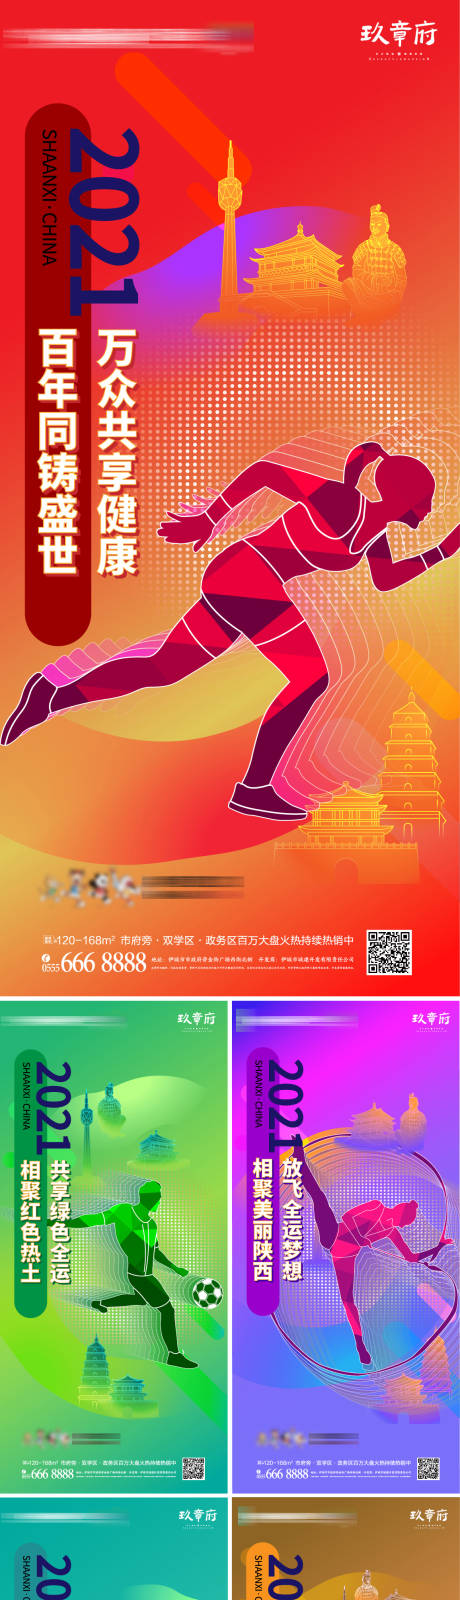 2021第14届全运会运动会系列海报